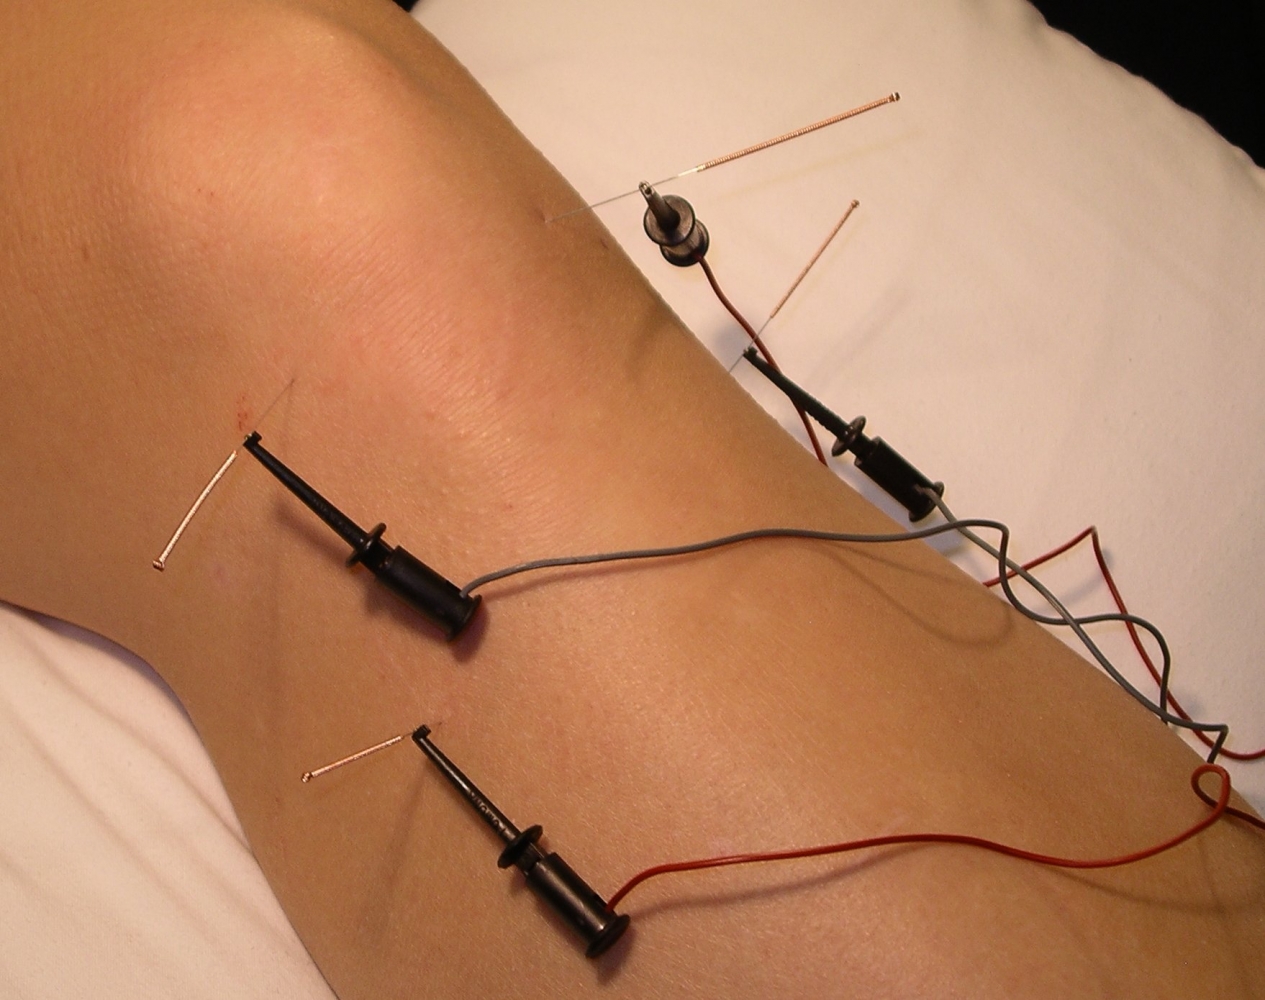 https://acupunctureus.com/wp-content/uploads/2013/03/Electro-Acupuncture.jpg